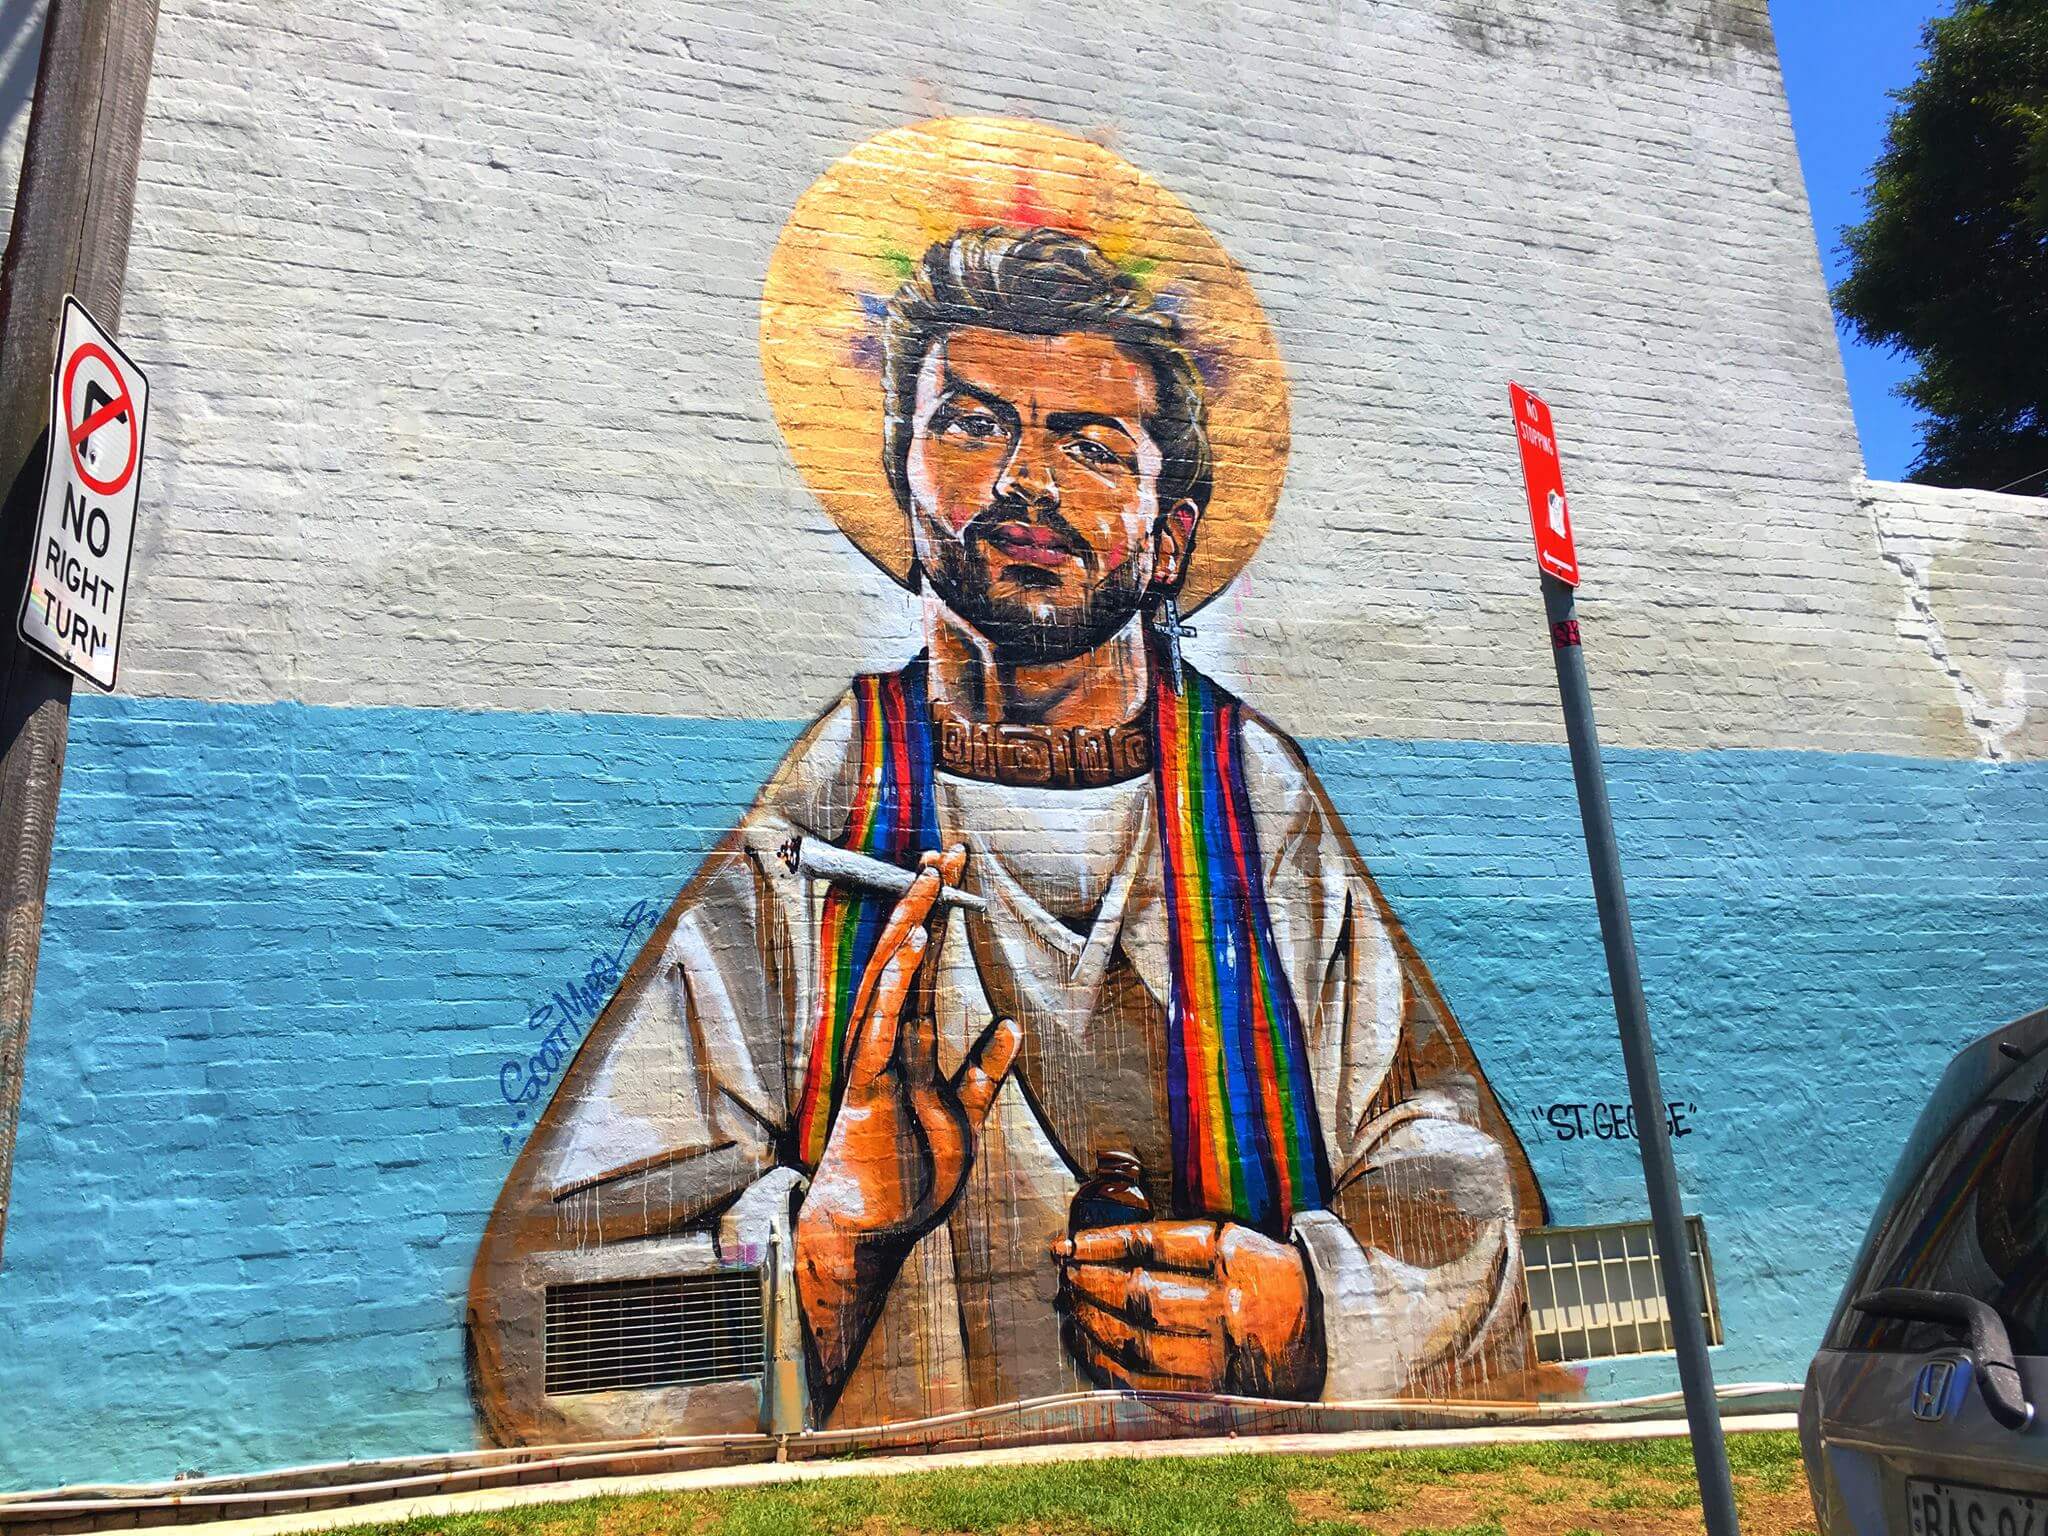 George Michael santo, con popper e canna: il ritratto street art creato a Sidney - 15994862 10154889014047603 781343291597498853 o - Gay.it